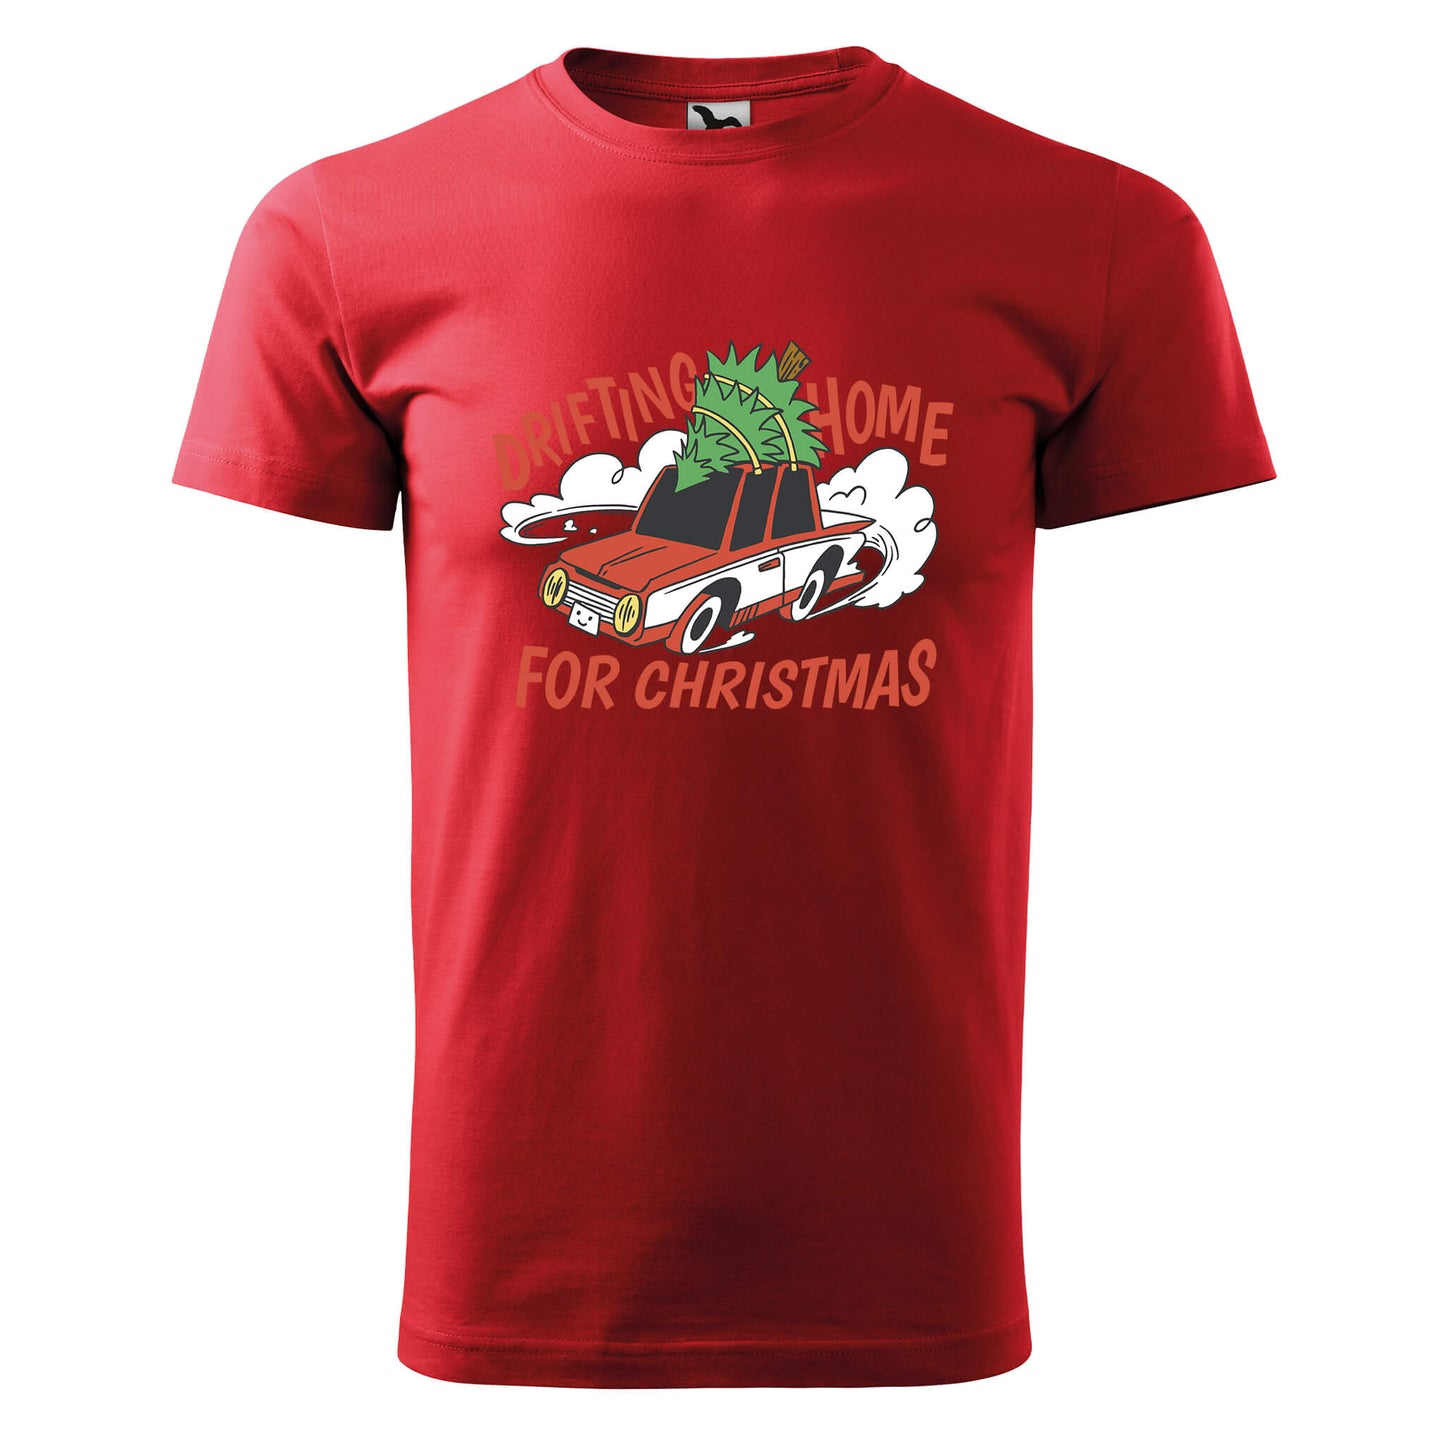 Drifting home for christmas t-shirt - rvdesignprint